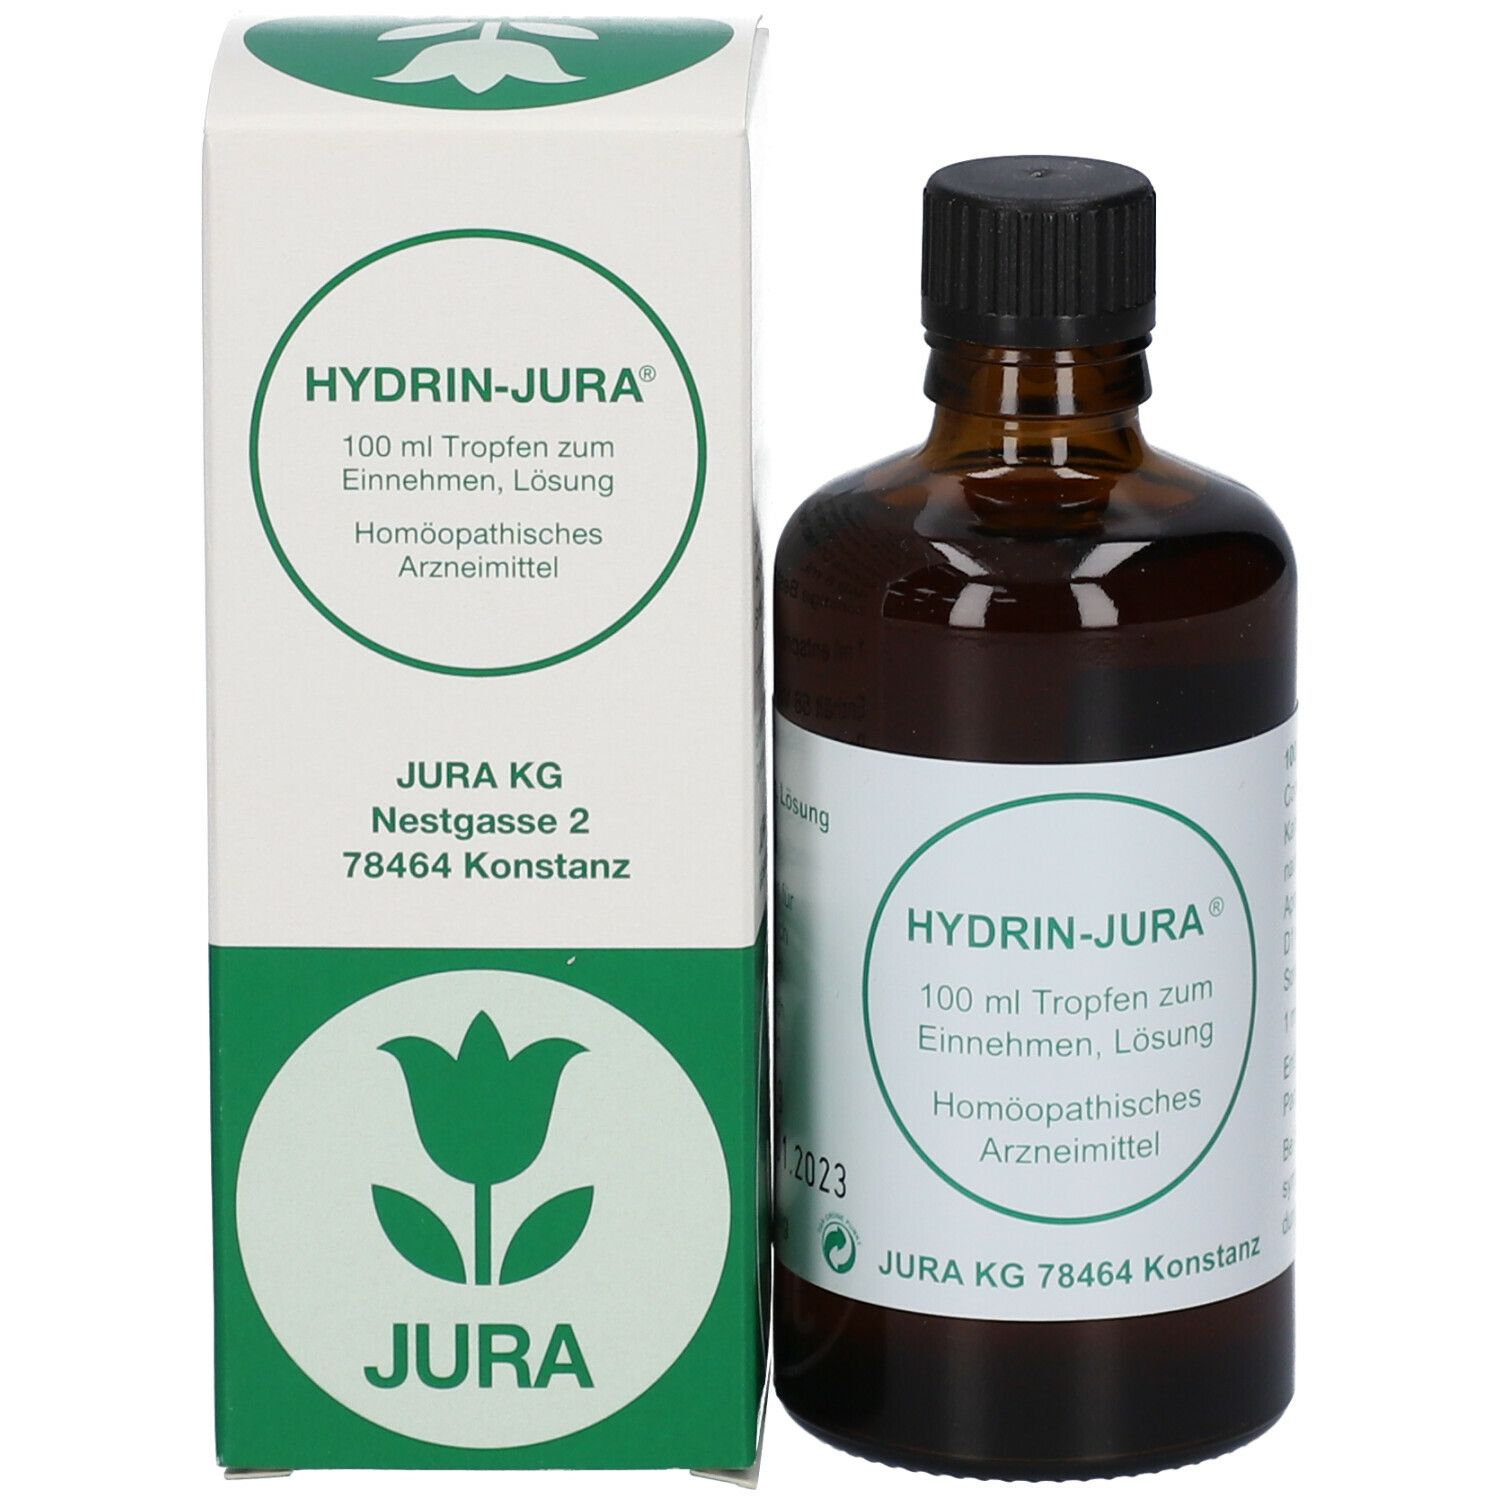 HYDRIN-JURA®